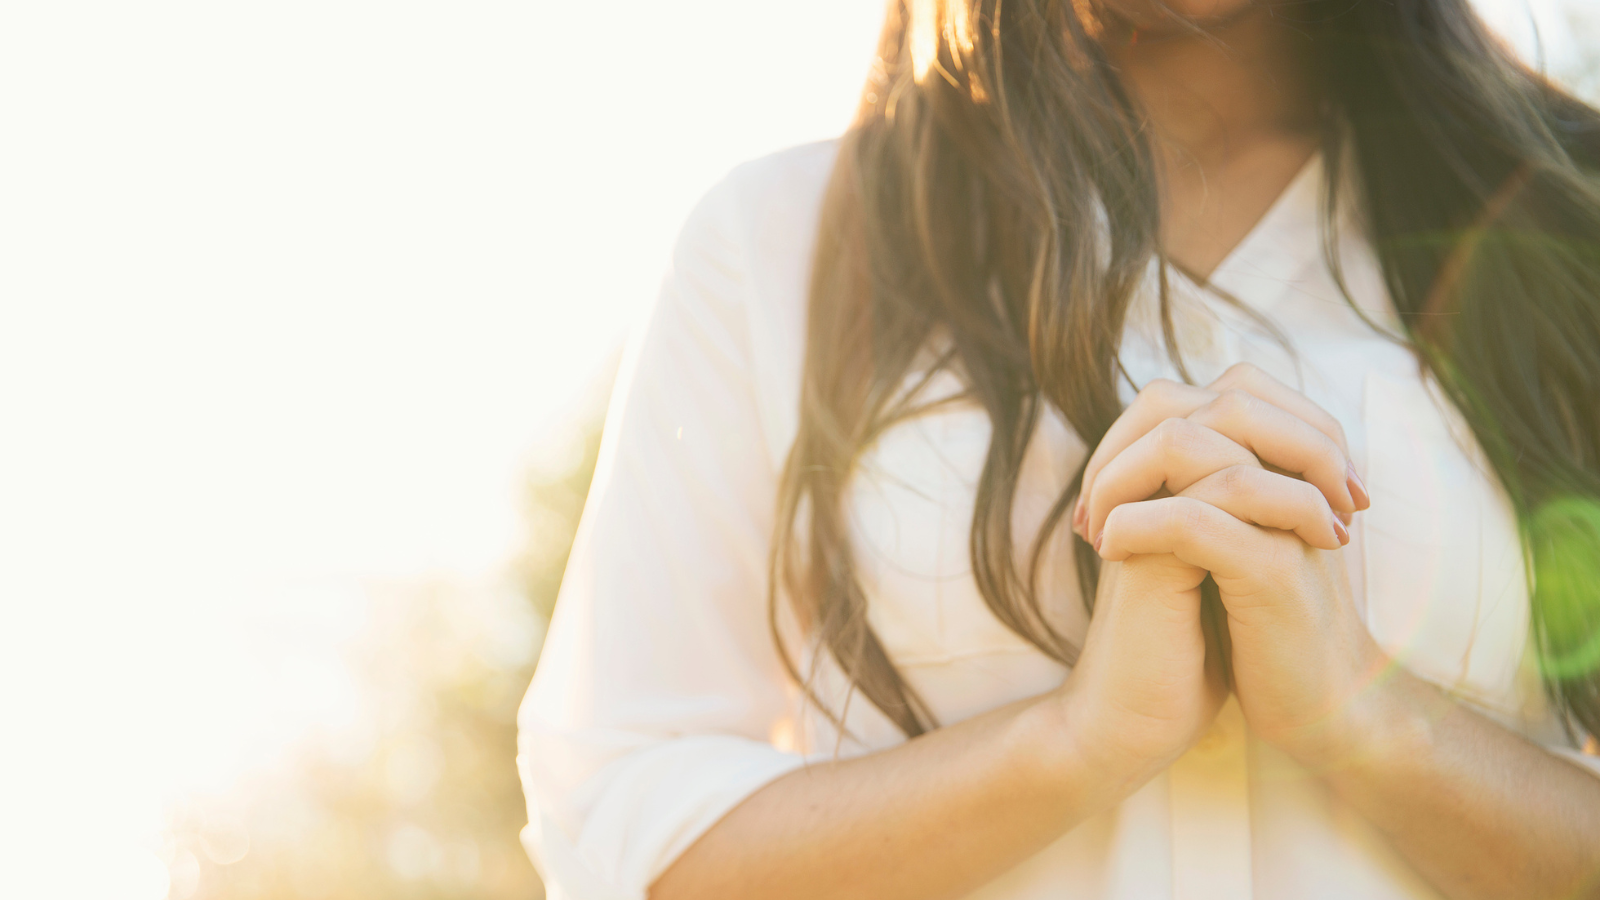 A woman in a white shirt praying.